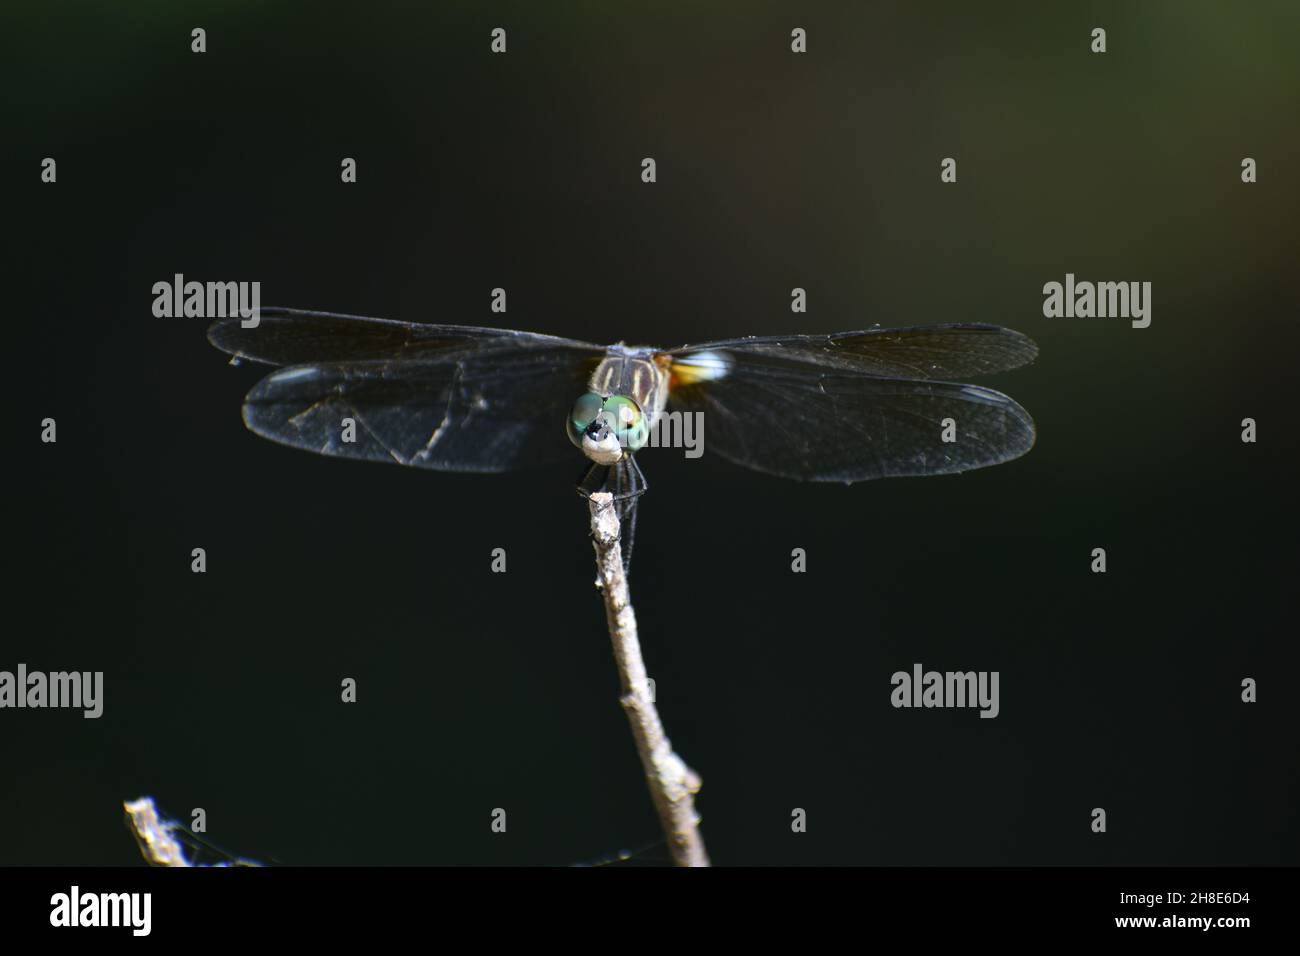 Primo piano di una grande libellula con ali trasparenti e occhi composti. Foto Stock